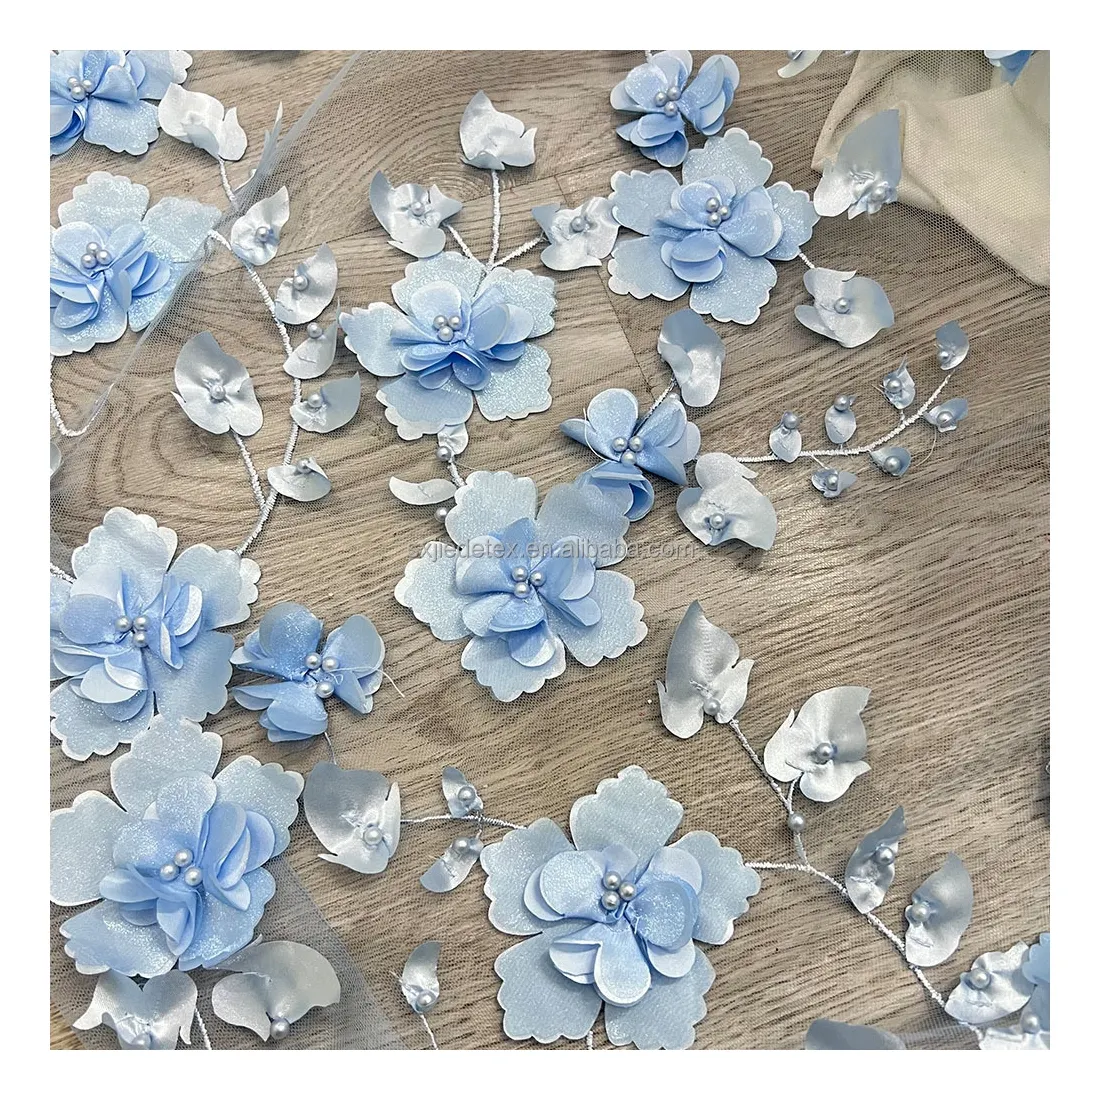 Novo design de tecido bordado de flores 3D azul para noiva, tecido de renda de tule francês bordado com pérolas para véu de casamento